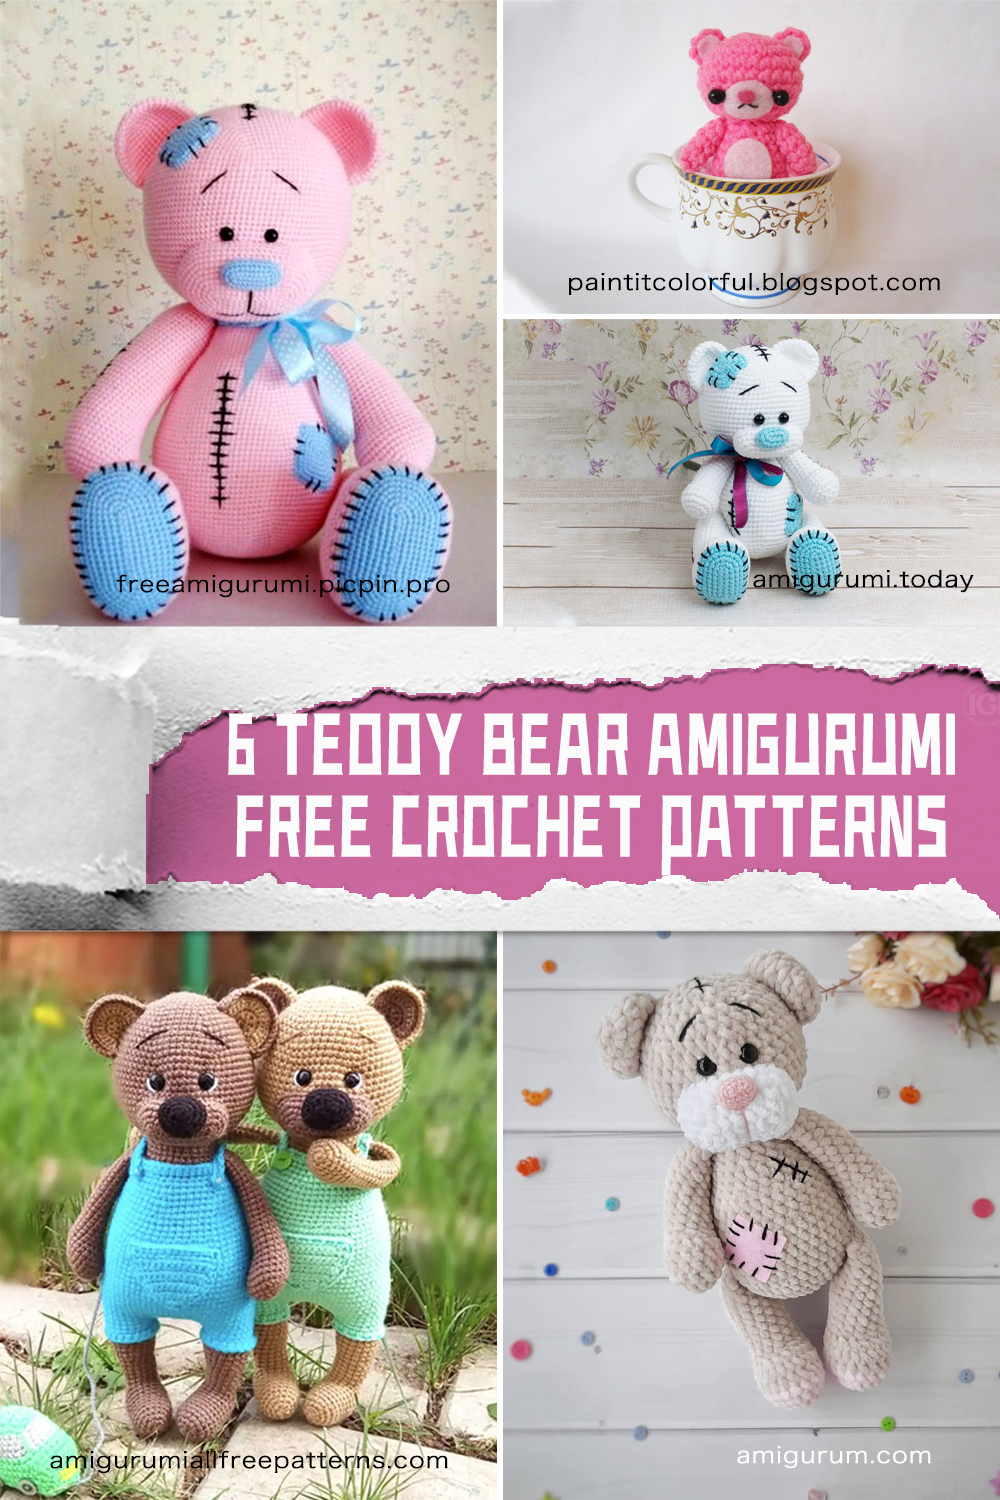 6 FREE Teddy Bear Crochet Patterns